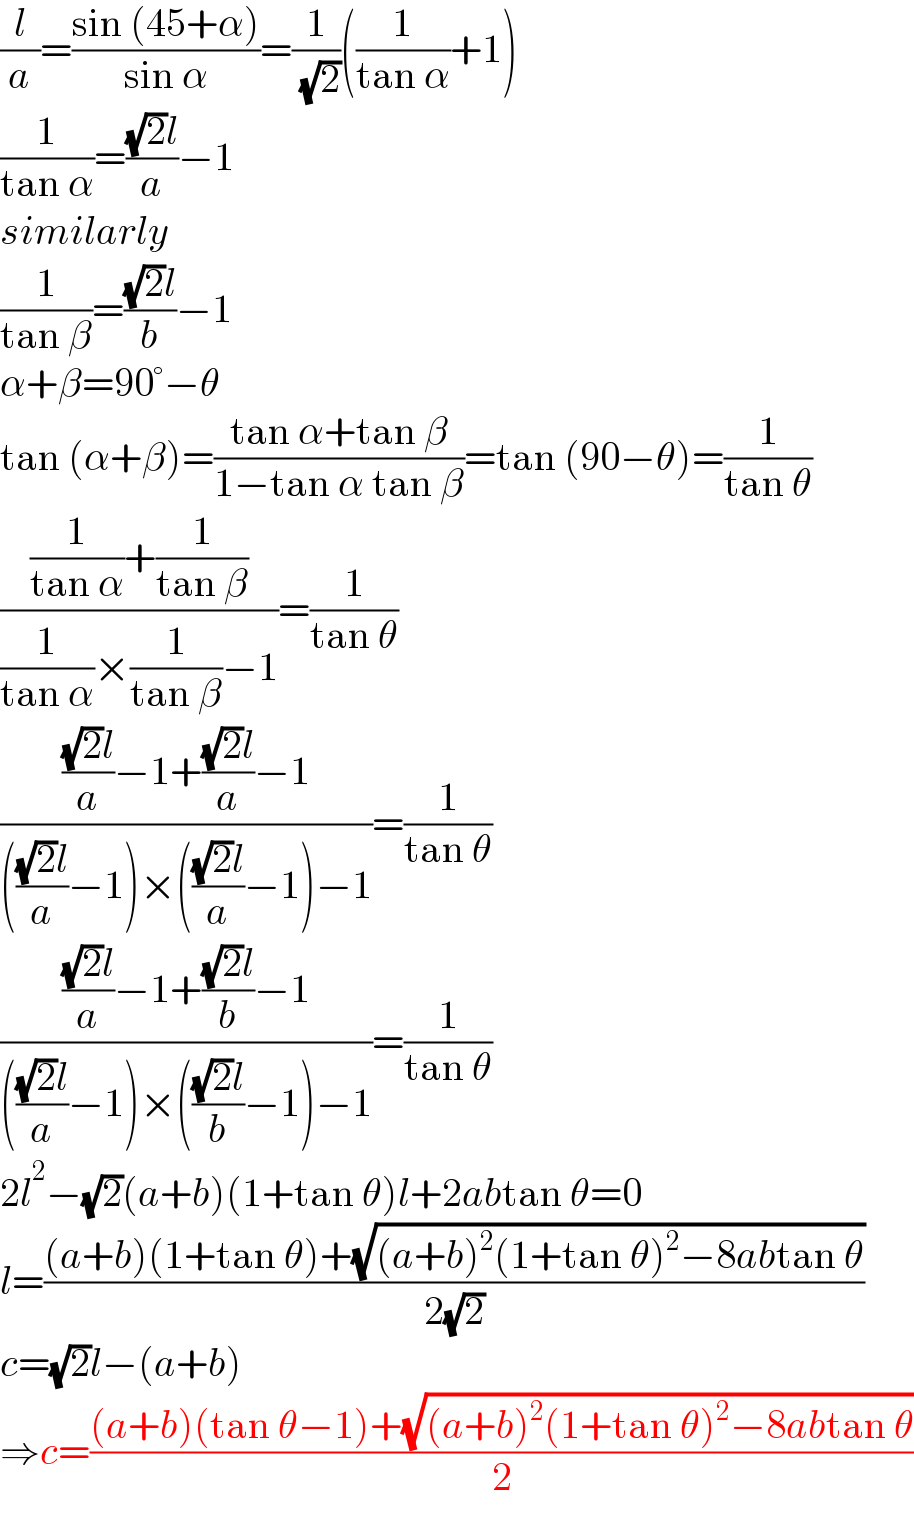 (l/a)=((sin (45+α))/(sin α))=(1/( (√2)))((1/(tan α))+1)  (1/(tan α))=(((√2)l)/a)−1  similarly  (1/(tan β))=(((√2)l)/b)−1  α+β=90°−θ  tan (α+β)=((tan α+tan β)/(1−tan α tan β))=tan (90−θ)=(1/(tan θ))  (((1/(tan α))+(1/(tan β)))/((1/(tan α))×(1/(tan β))−1))=(1/(tan θ))  (((((√2)l)/a)−1+(((√2)l)/a)−1)/(((((√2)l)/a)−1)×((((√2)l)/a)−1)−1))=(1/(tan θ))  (((((√2)l)/a)−1+(((√2)l)/b)−1)/(((((√2)l)/a)−1)×((((√2)l)/b)−1)−1))=(1/(tan θ))  2l^2 −(√2)(a+b)(1+tan θ)l+2abtan θ=0  l=(((a+b)(1+tan θ)+(√((a+b)^2 (1+tan θ)^2 −8abtan θ)))/(2(√2)))  c=(√2)l−(a+b)  ⇒c=(((a+b)(tan θ−1)+(√((a+b)^2 (1+tan θ)^2 −8abtan θ)))/2)  